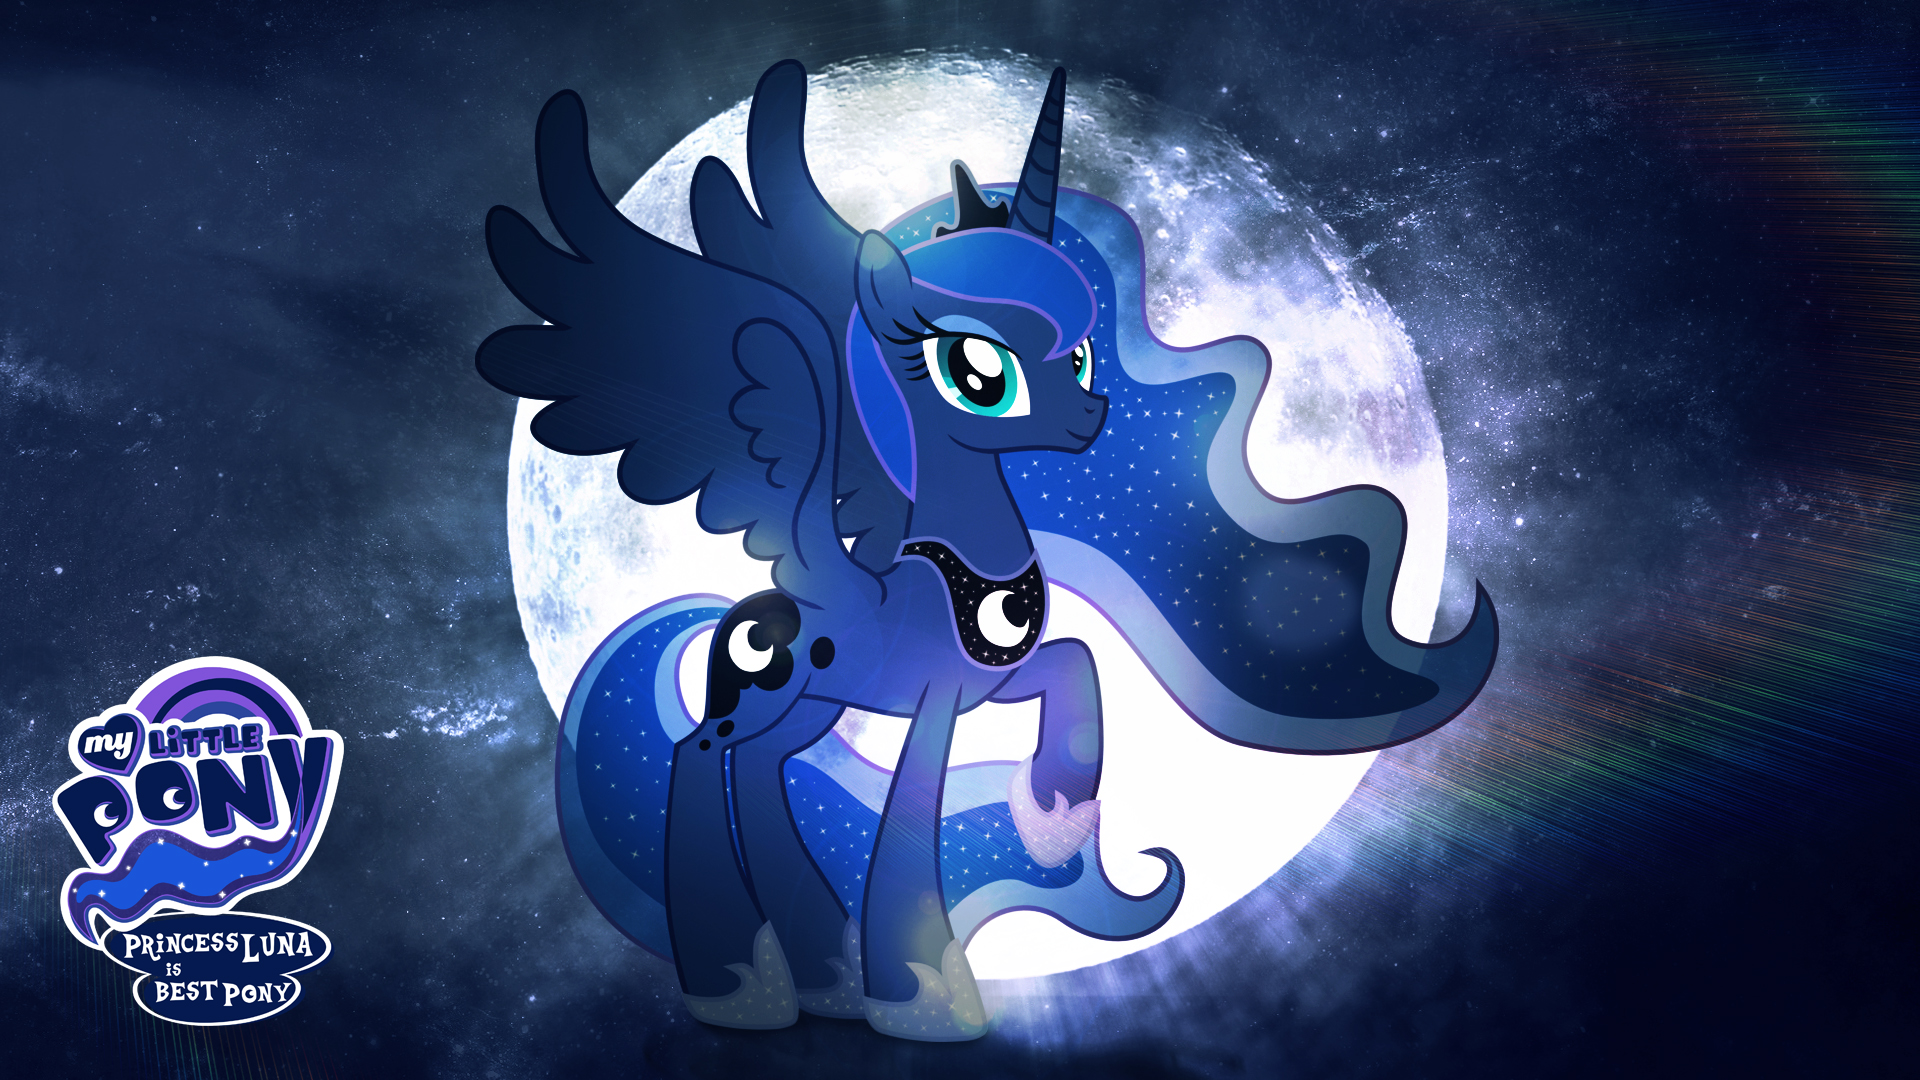 Princess Luna Fan Art Wallpaper Is Best Pony HD